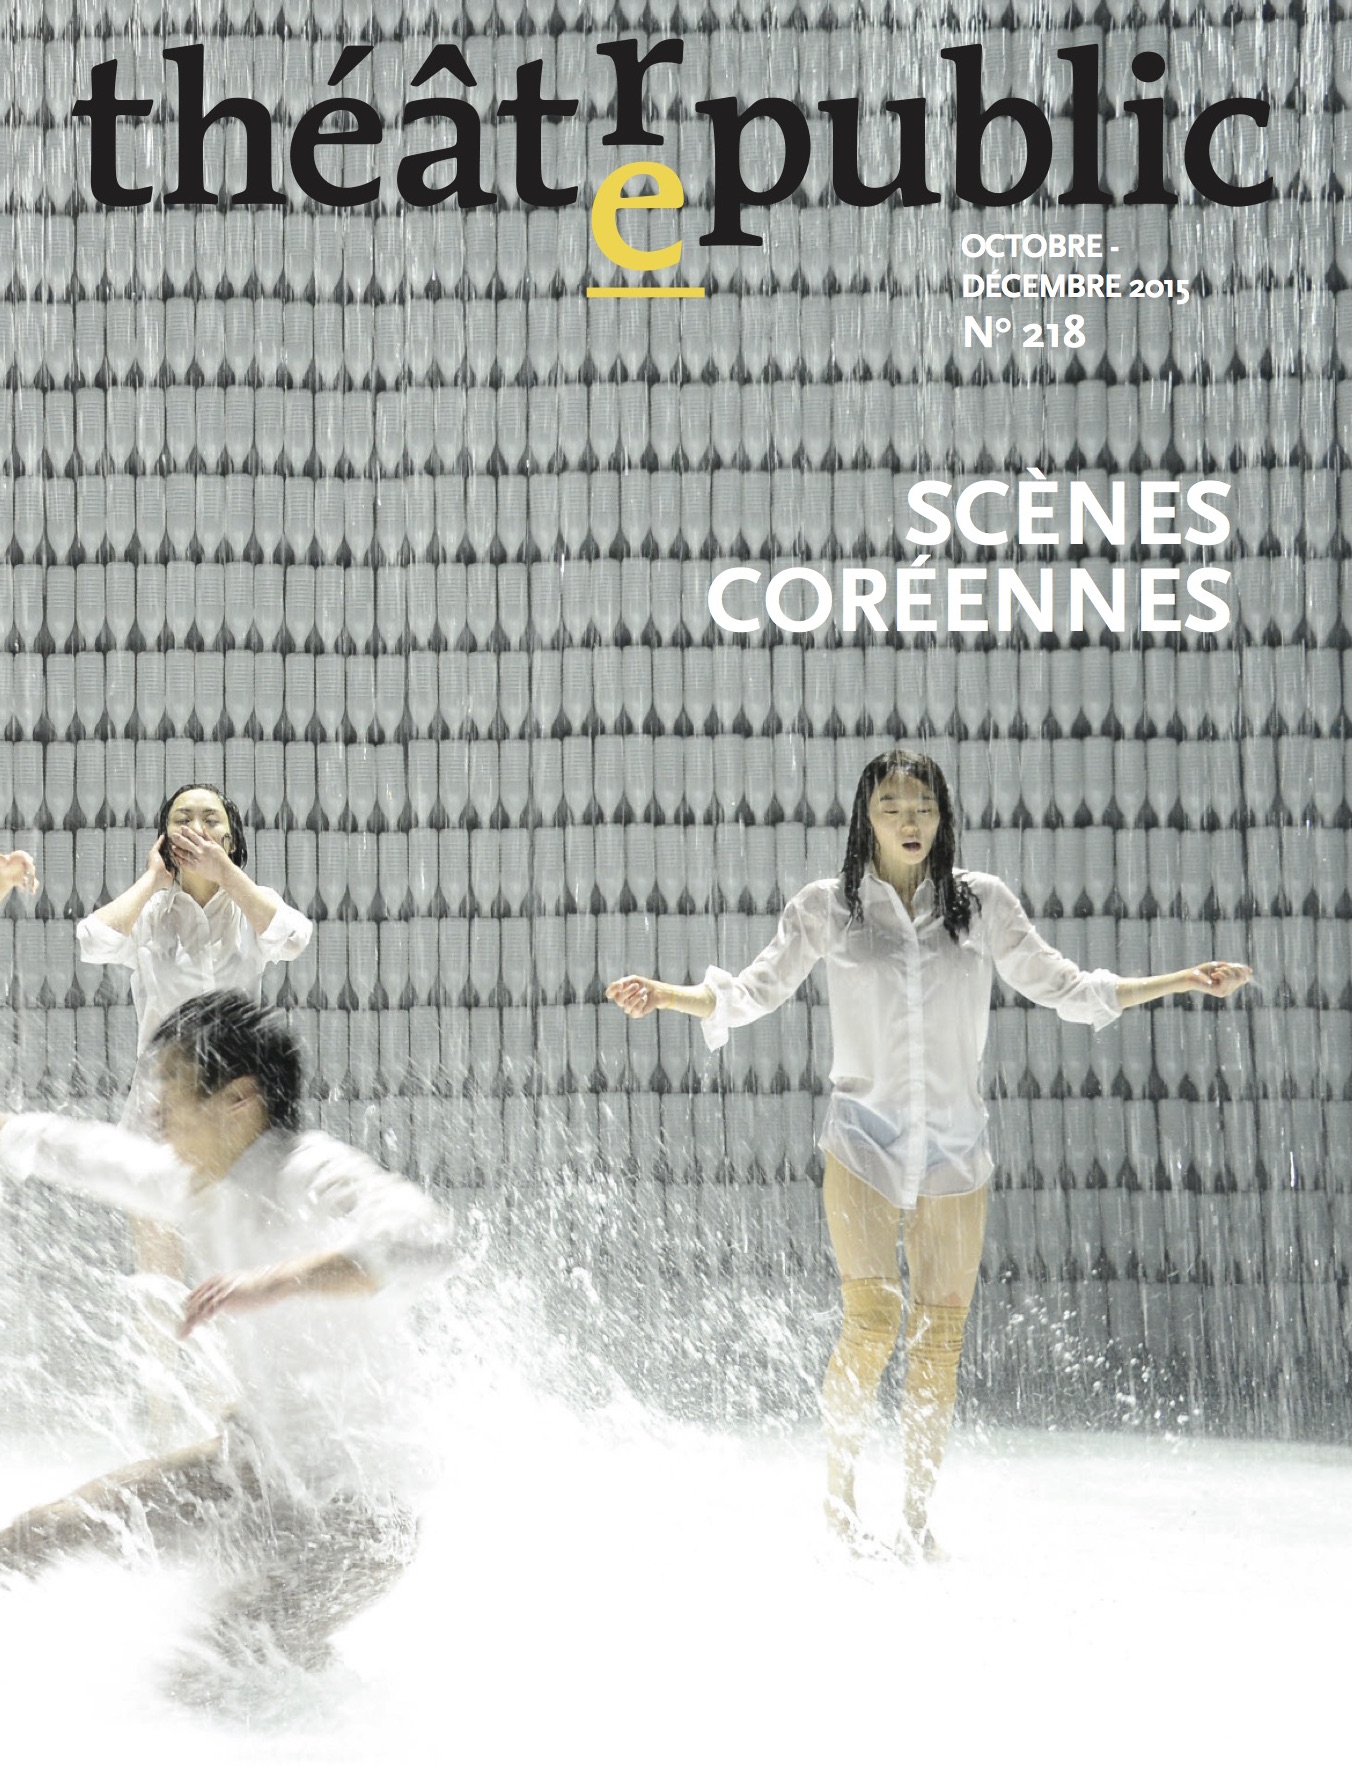 Scènes coréennes | Numéro 218 | Théâtre/Public